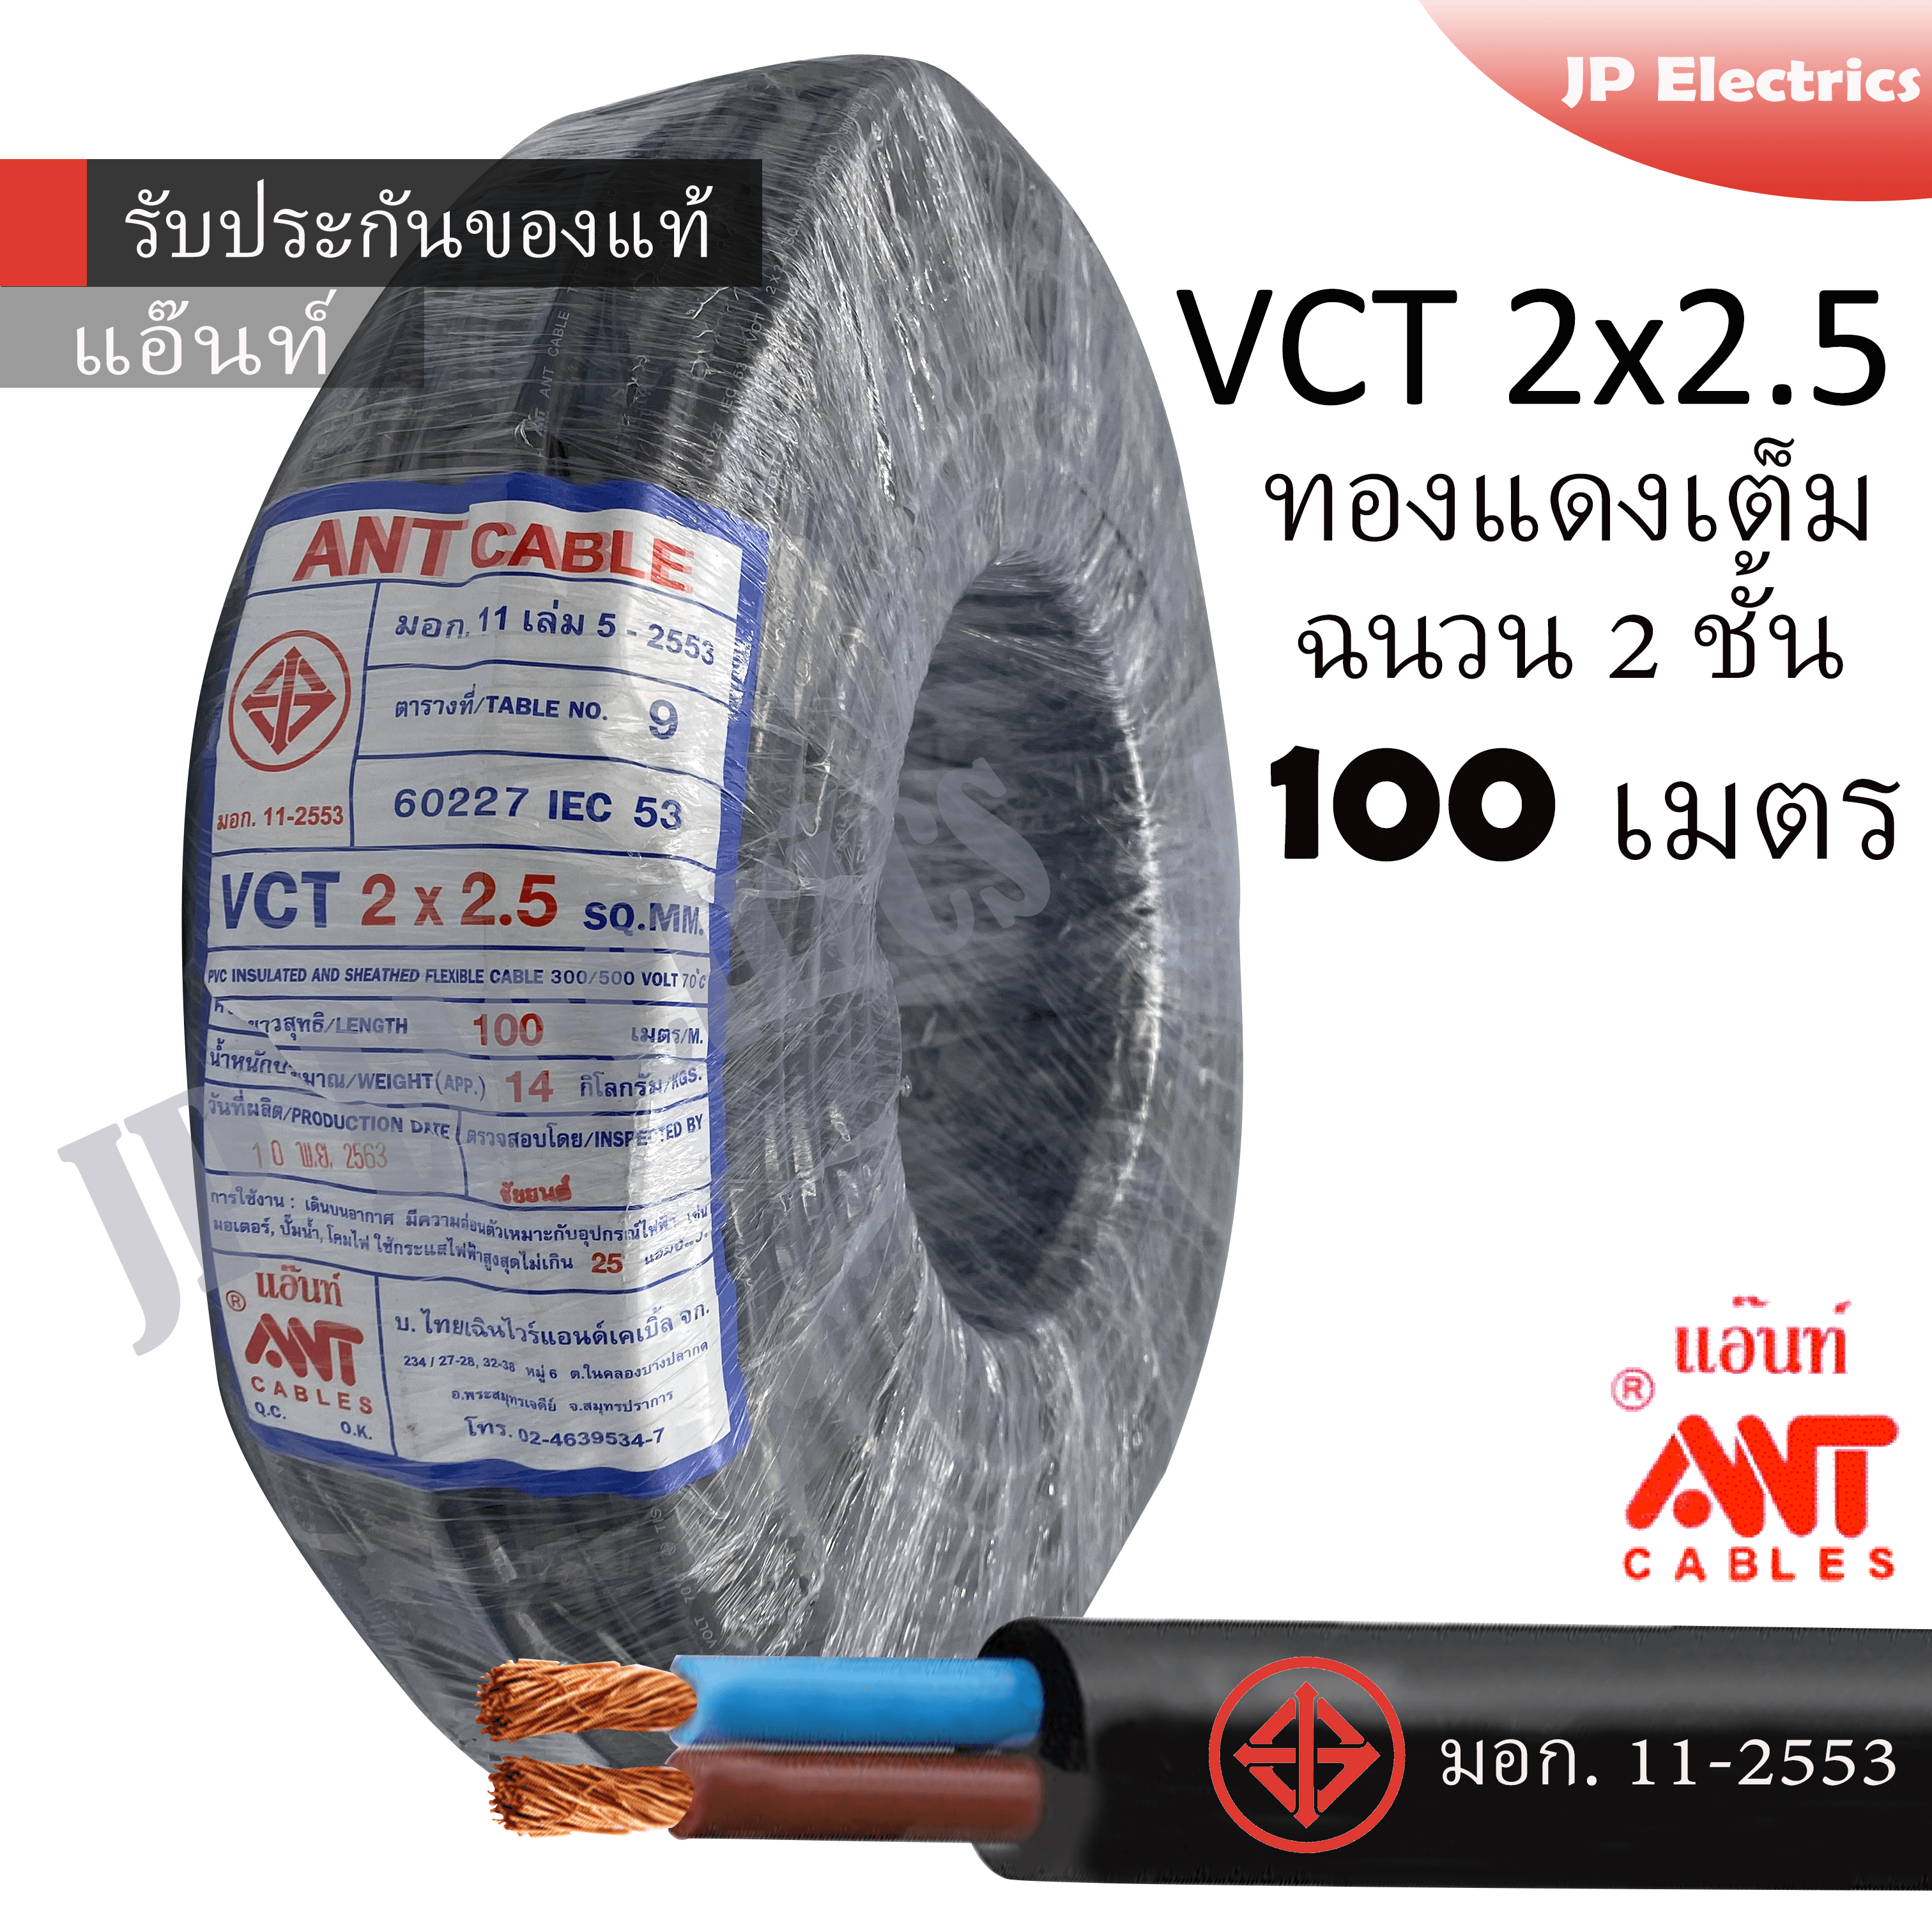 ANT สายไฟ VCT 2x2.5 ขด(100เมตร) ดำ มอก.